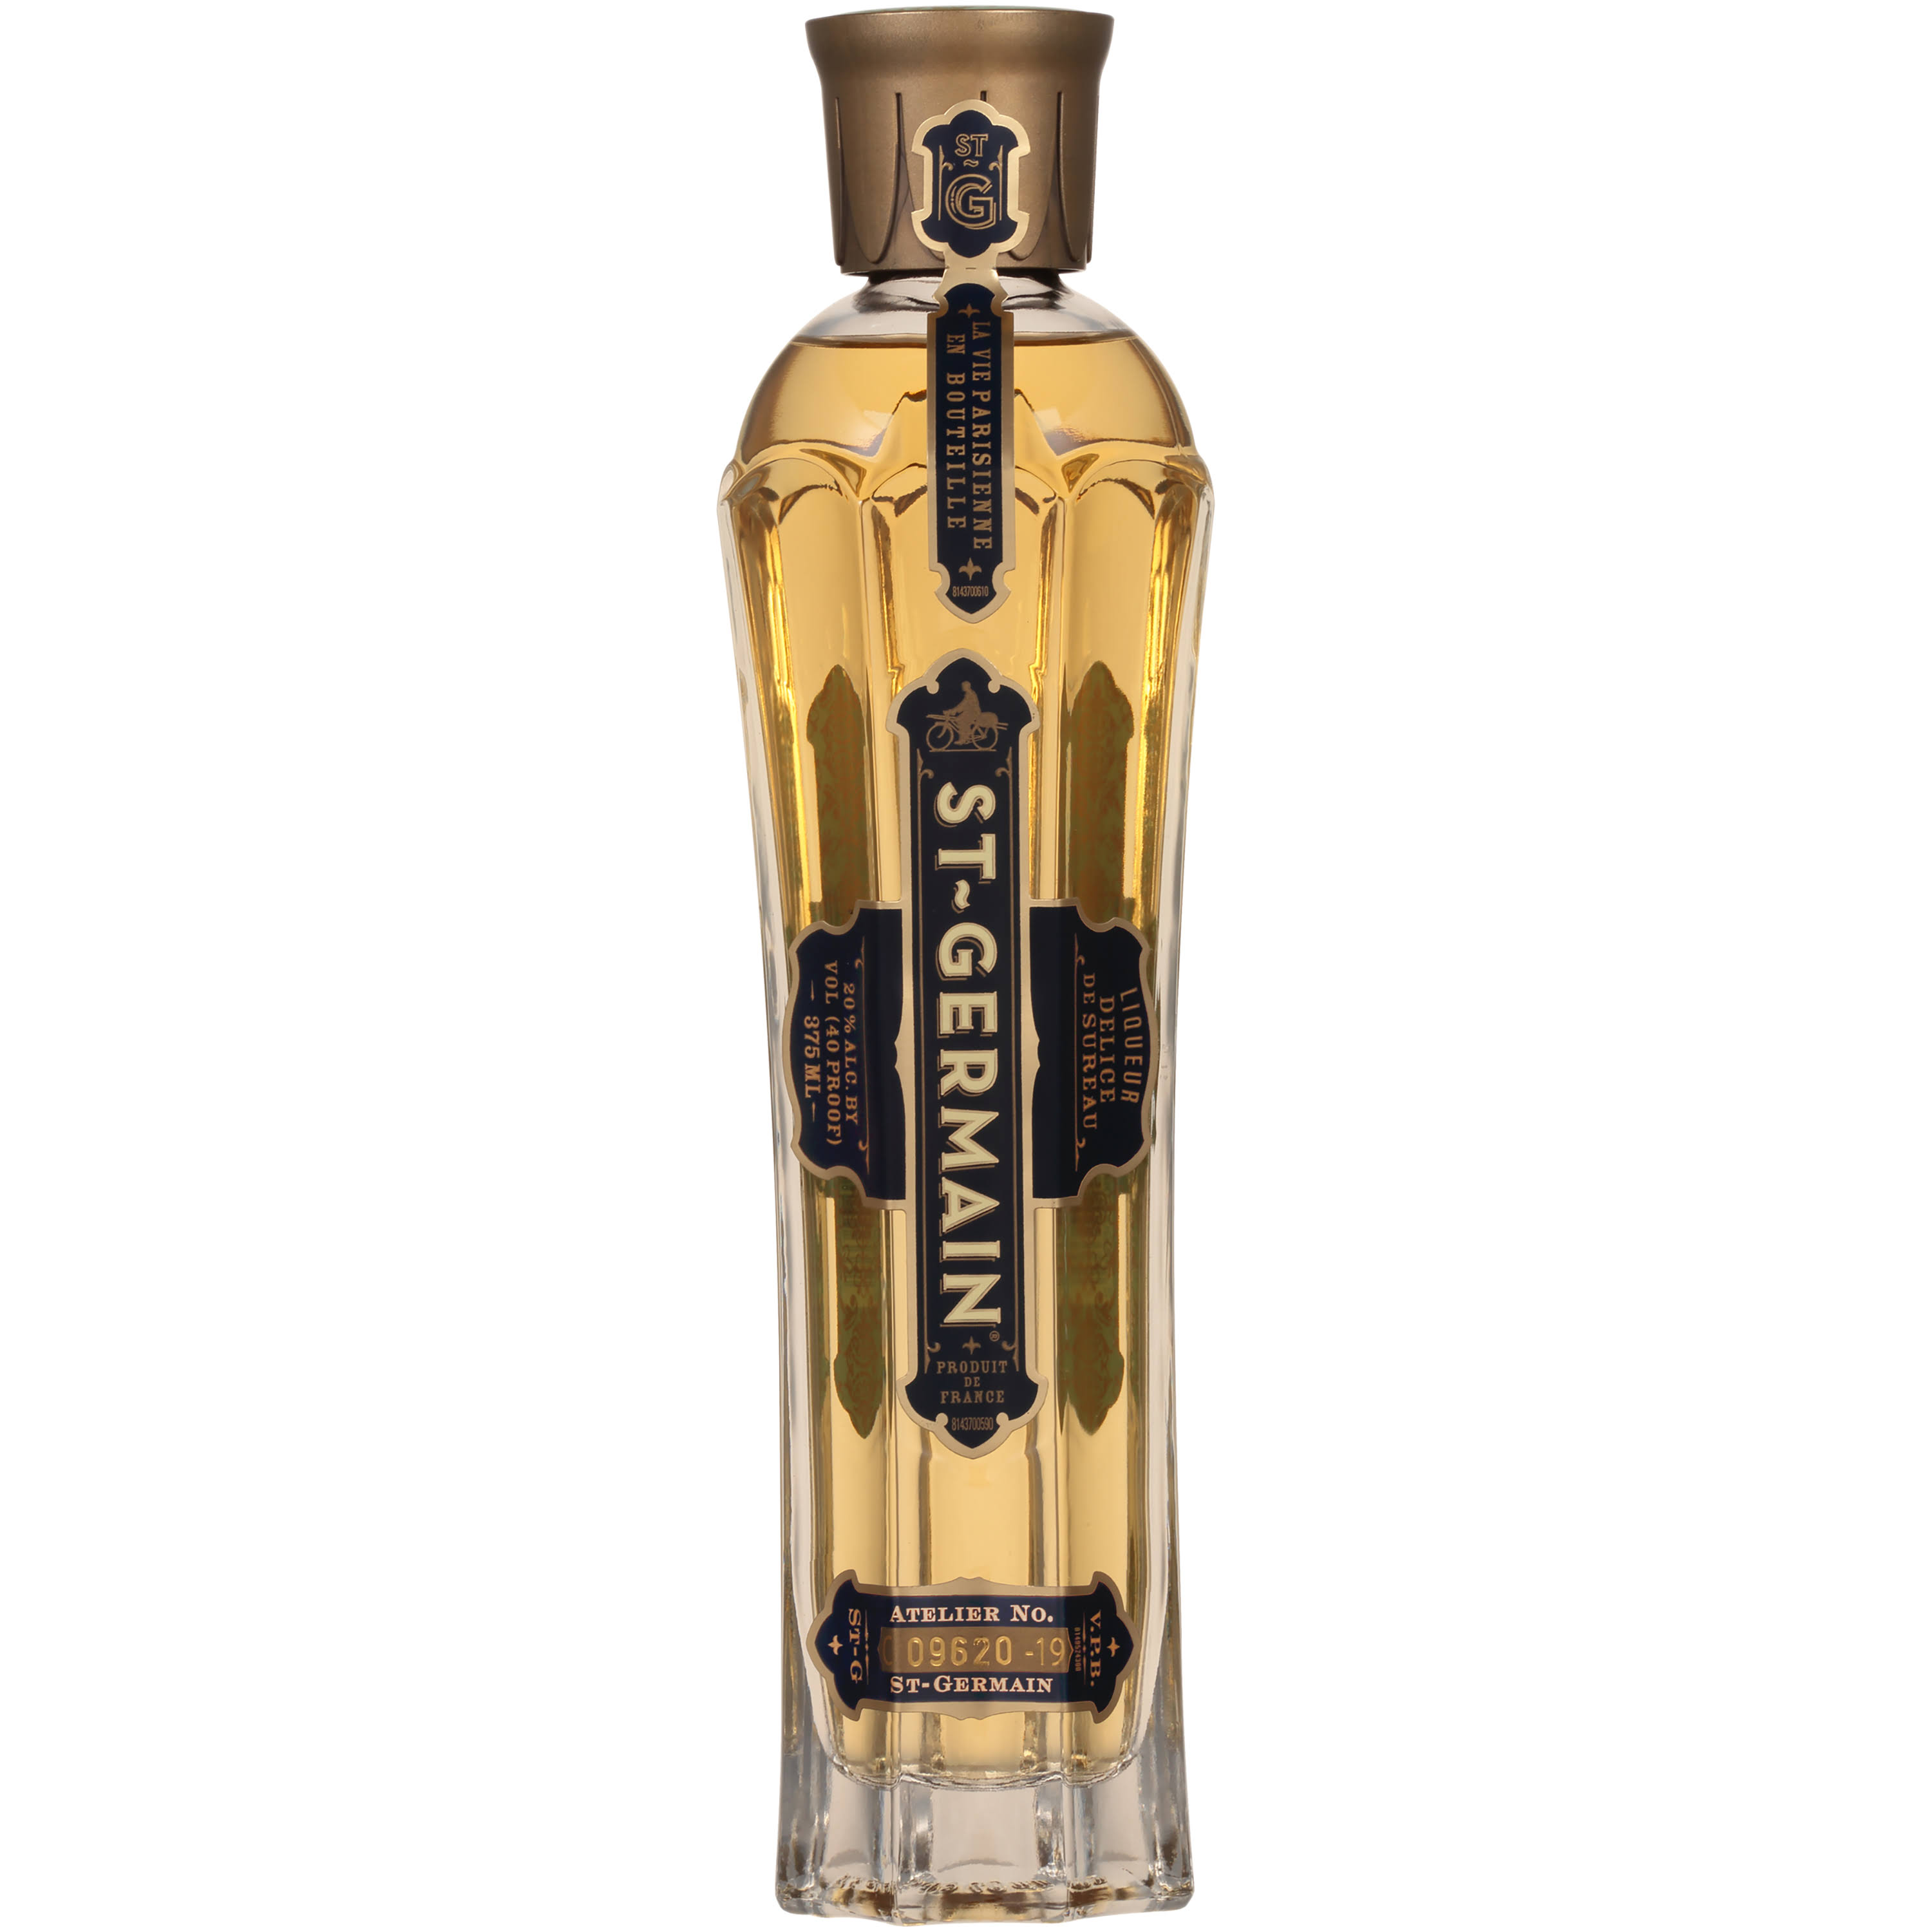 St Germain Liqueur, Delice De Sureau - 375 ml